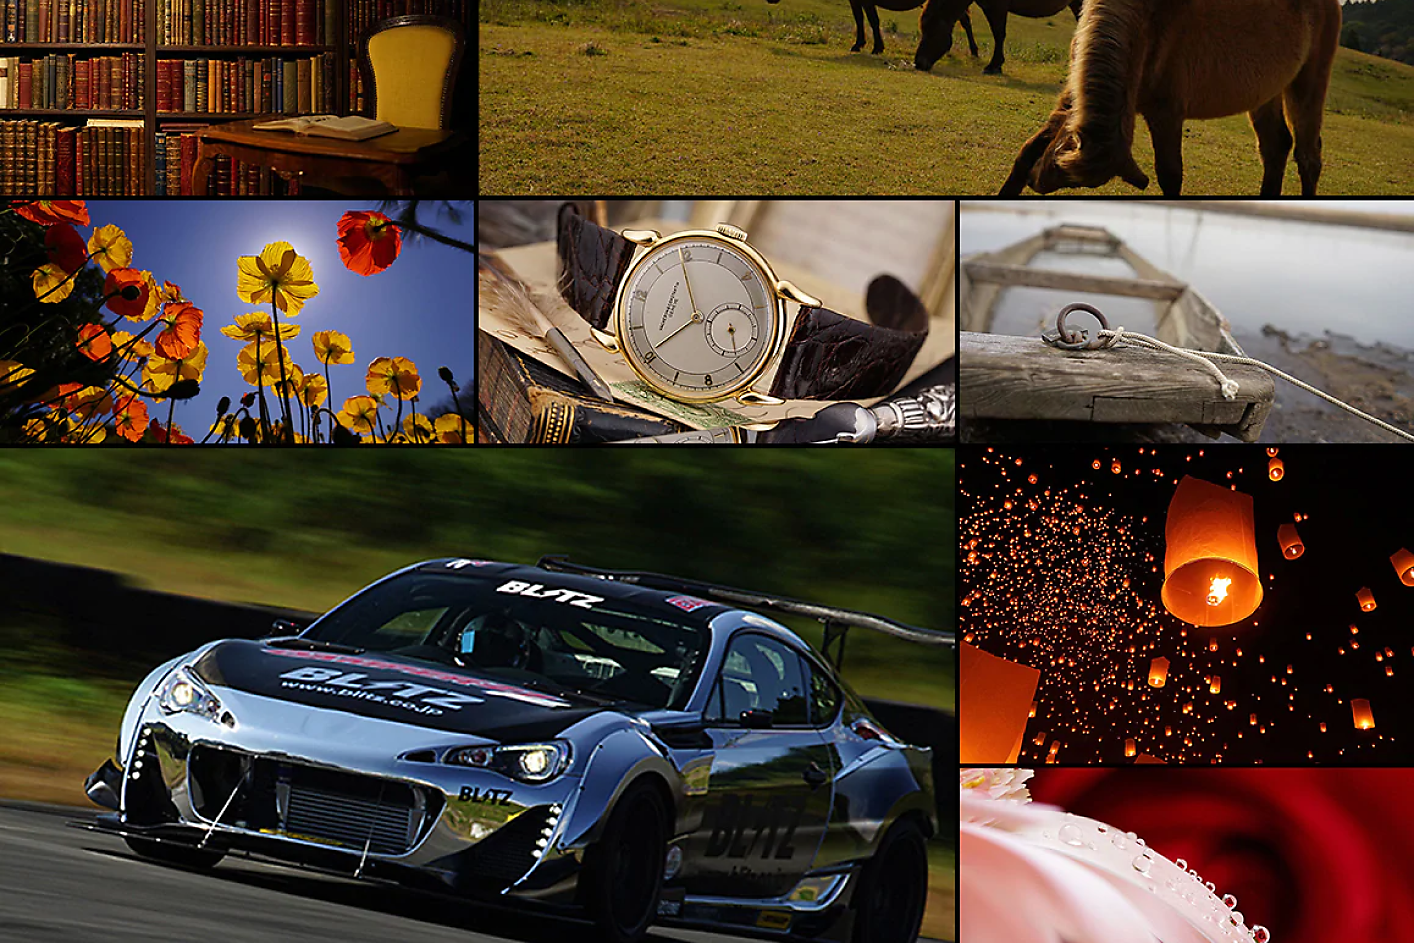 Collage colorato di otto immagini, tra le quali figurano auto da corsa, cavallo, orologio e fiori